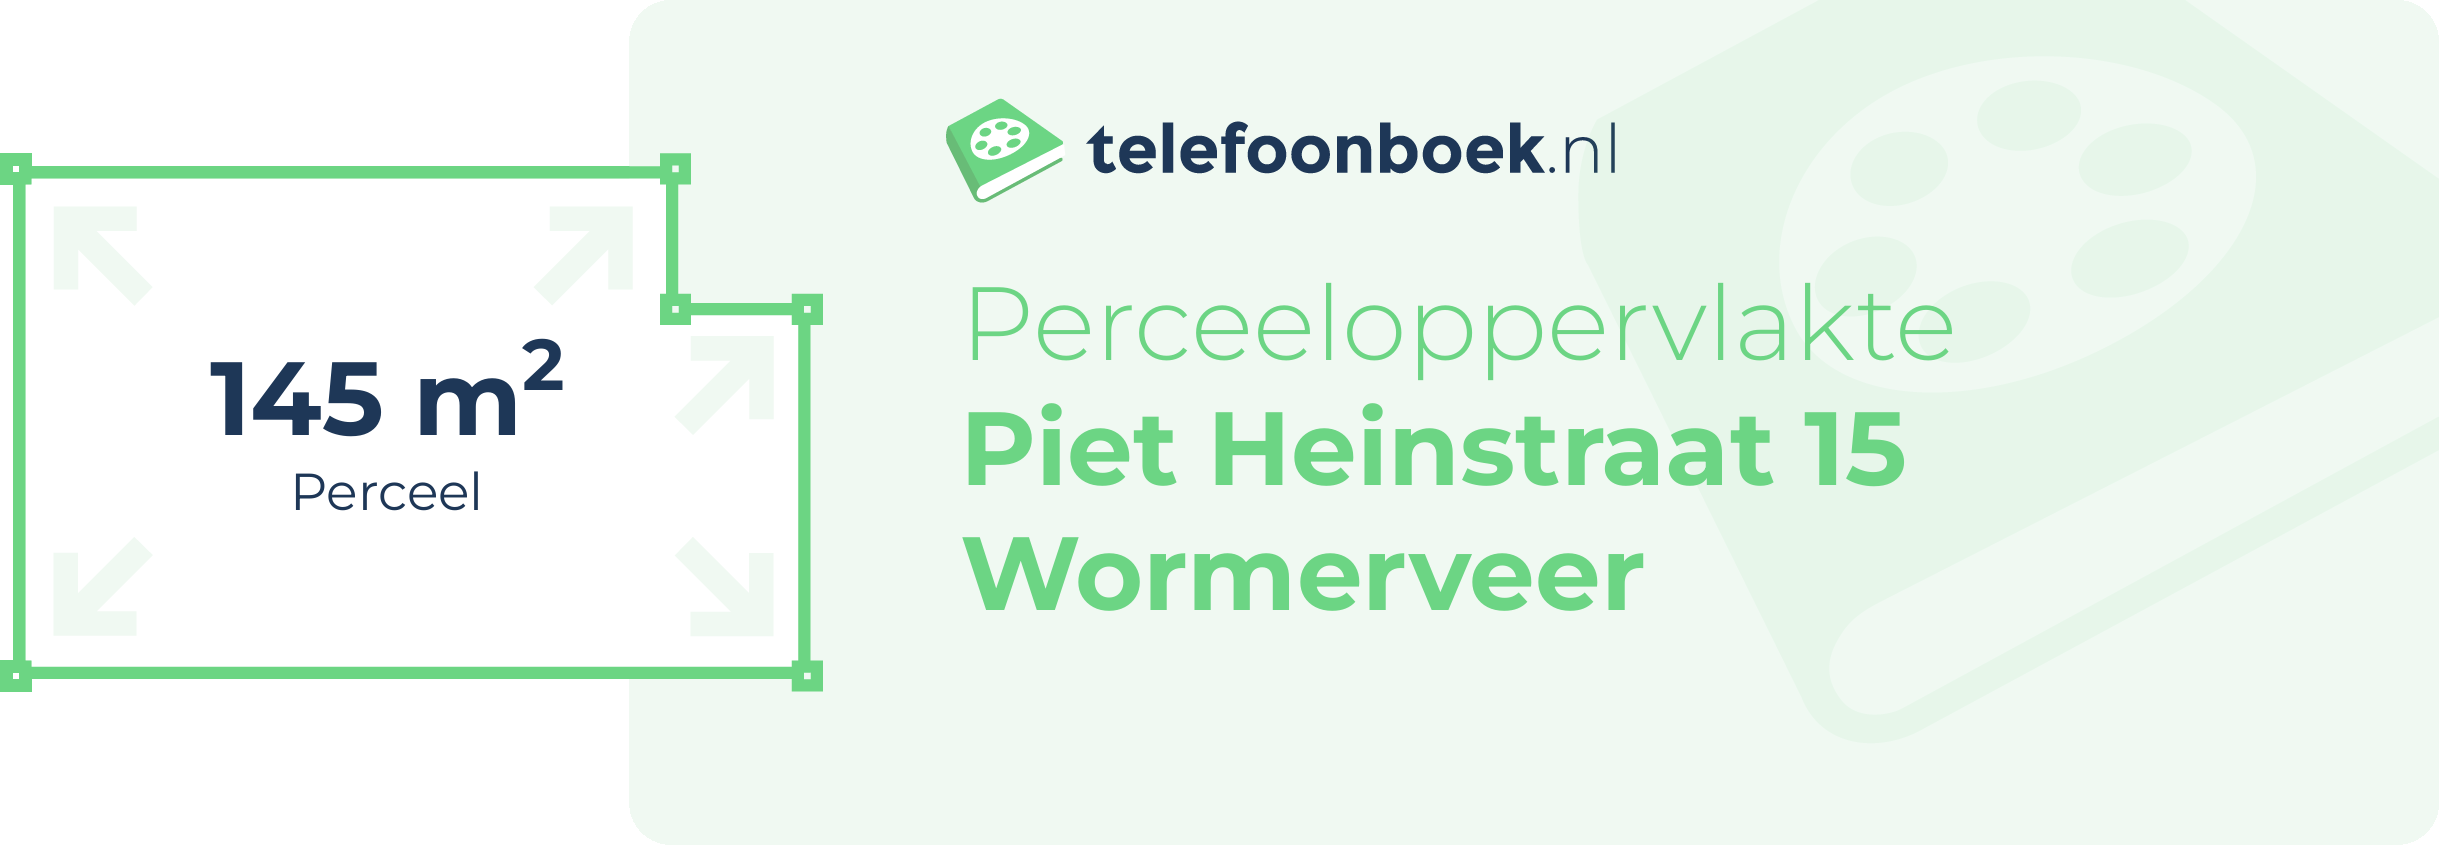 Perceeloppervlakte Piet Heinstraat 15 Wormerveer